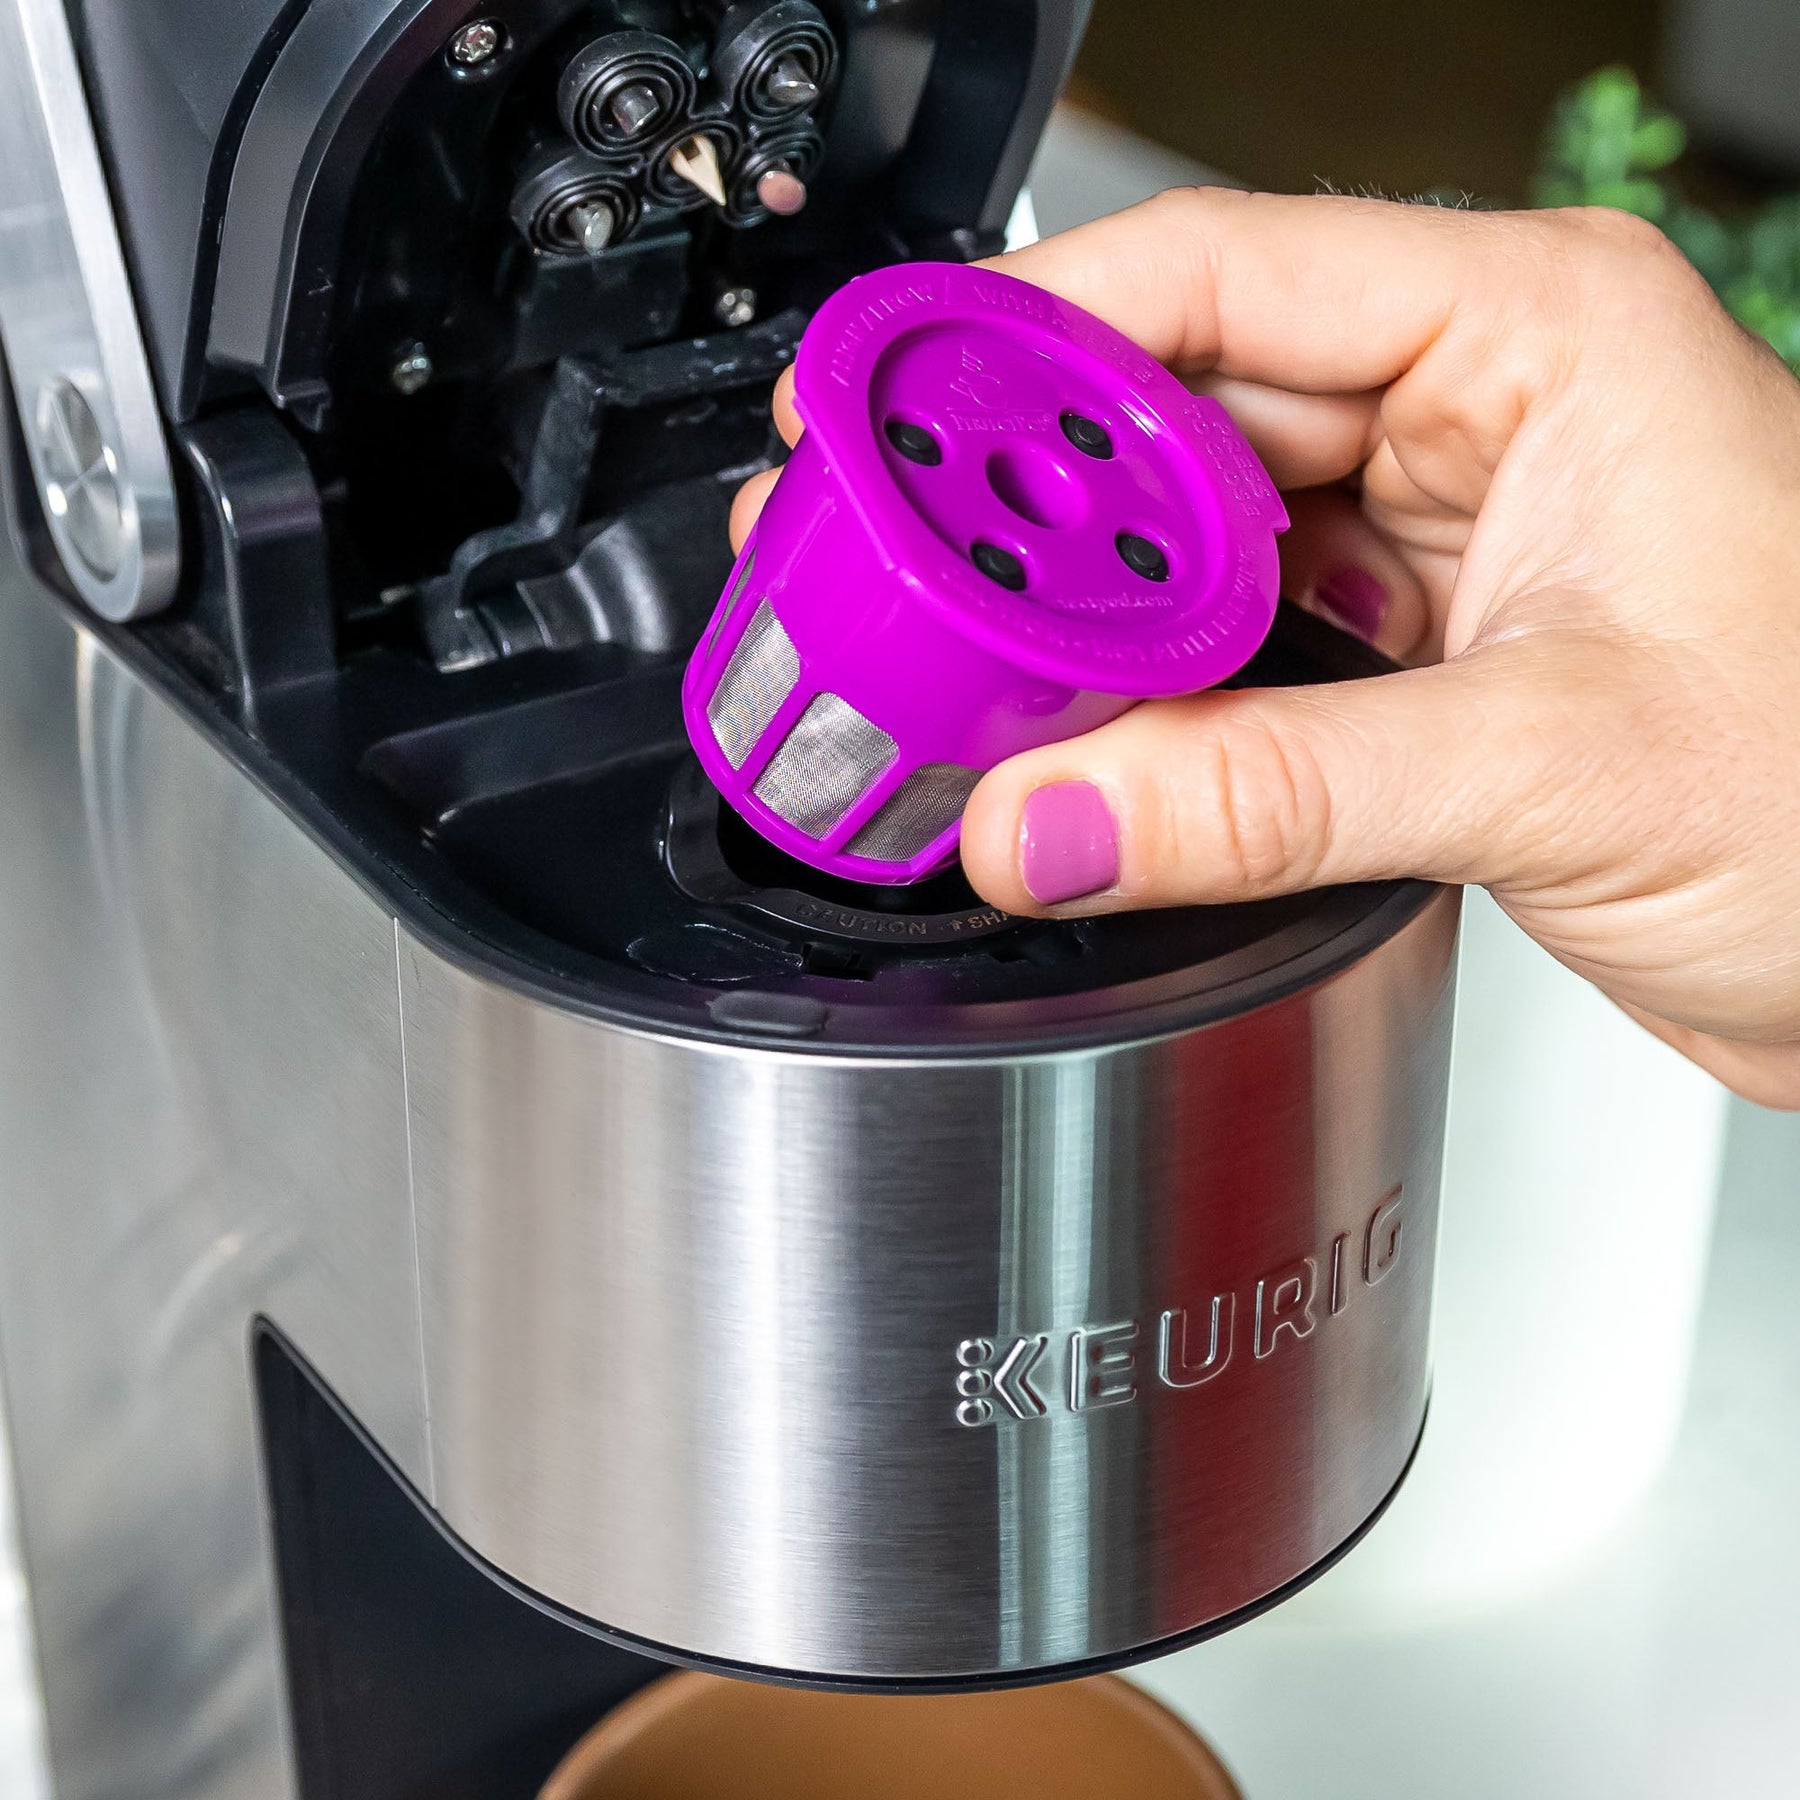 Taza universal de filtro de café reutilizable Perfect Pod Single Serve –  ARM Enterprises, Inc.